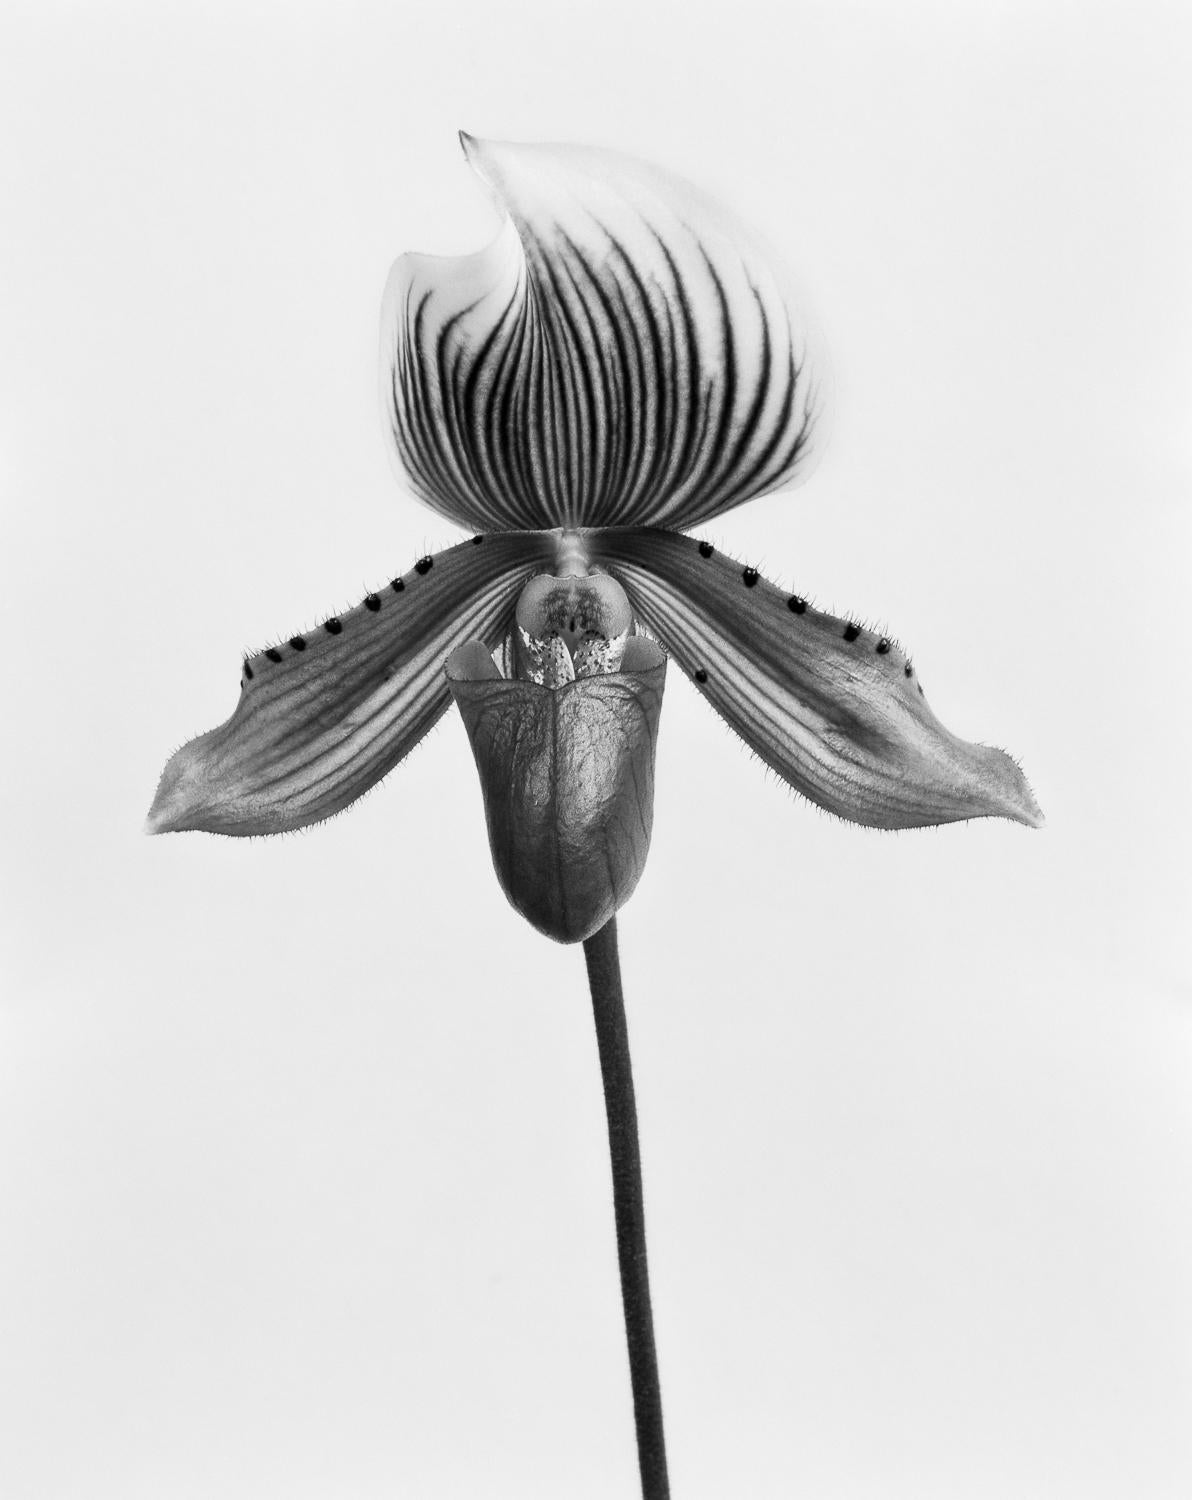 Orquídea Paphiopedilum Callosum, Silver Gelatin Print